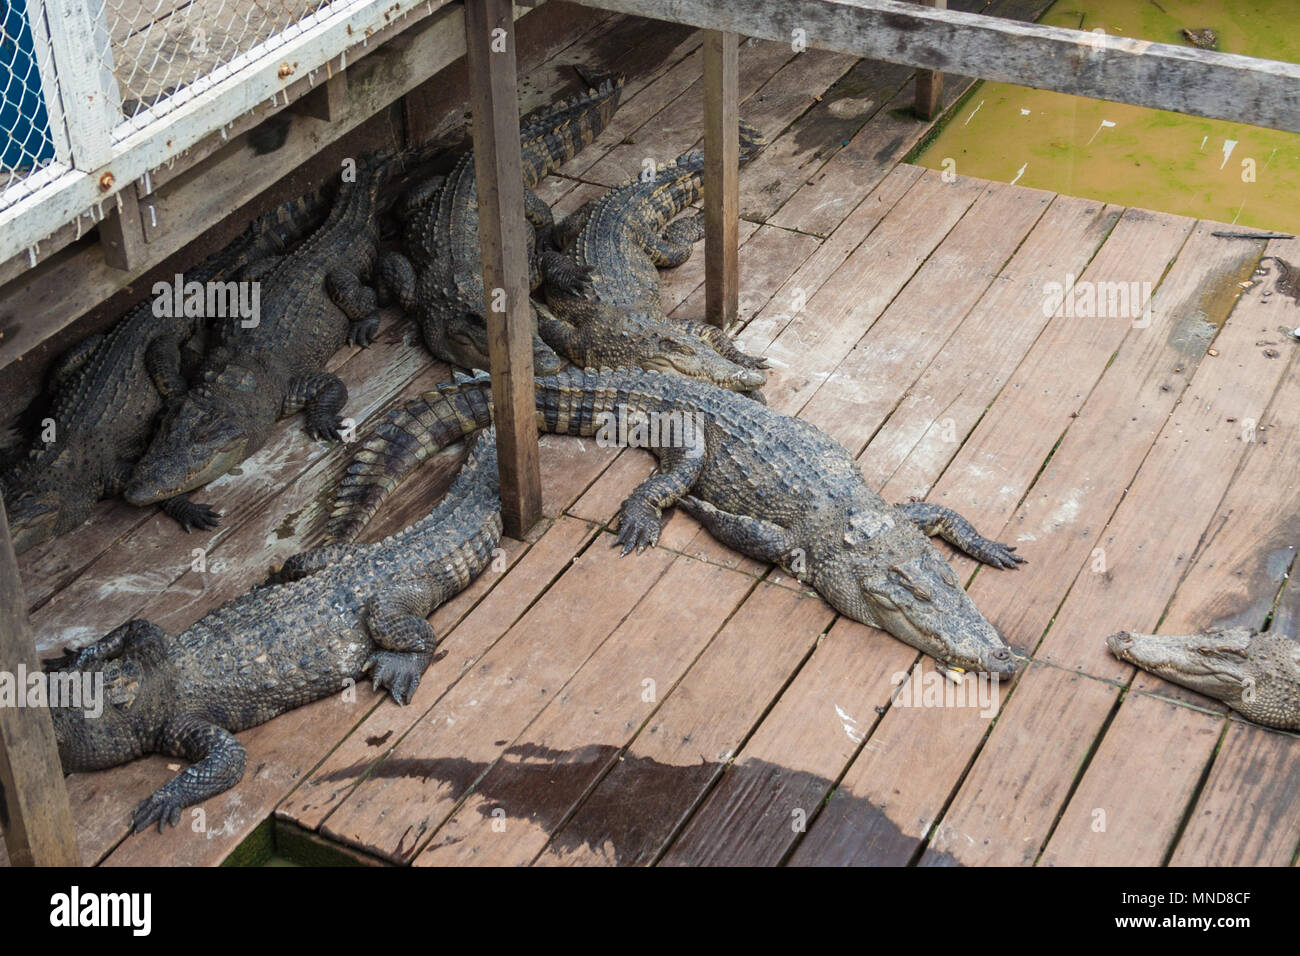 Diversi Siamese coccodrilli di acqua dolce (Crocodylus siamensis) stanno dormendo insieme su una piccola floating Crocodile Farm sul lago Tonle Sap in Cambogia. Foto Stock